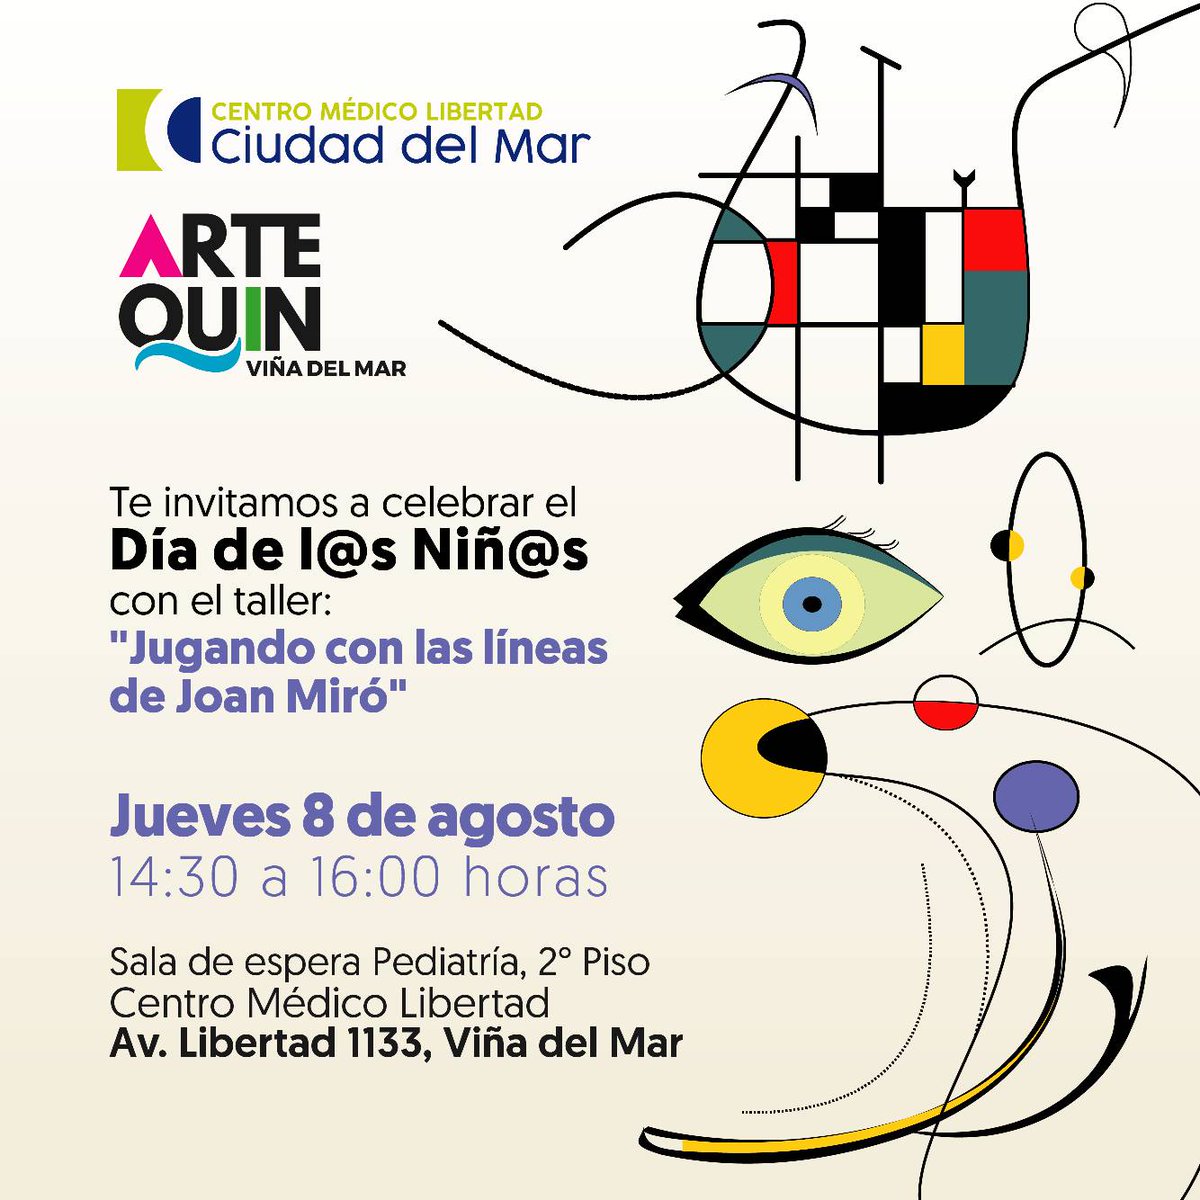 ¡En Clínica Ciudad del Mar celebramos a los niños y niñas en su día! Te invitamos a participar de nuestro taller ''Jugando con las líneas de Joan Miró'', junto a Artequin Viña del Mar, en Centro Médico Libertad.